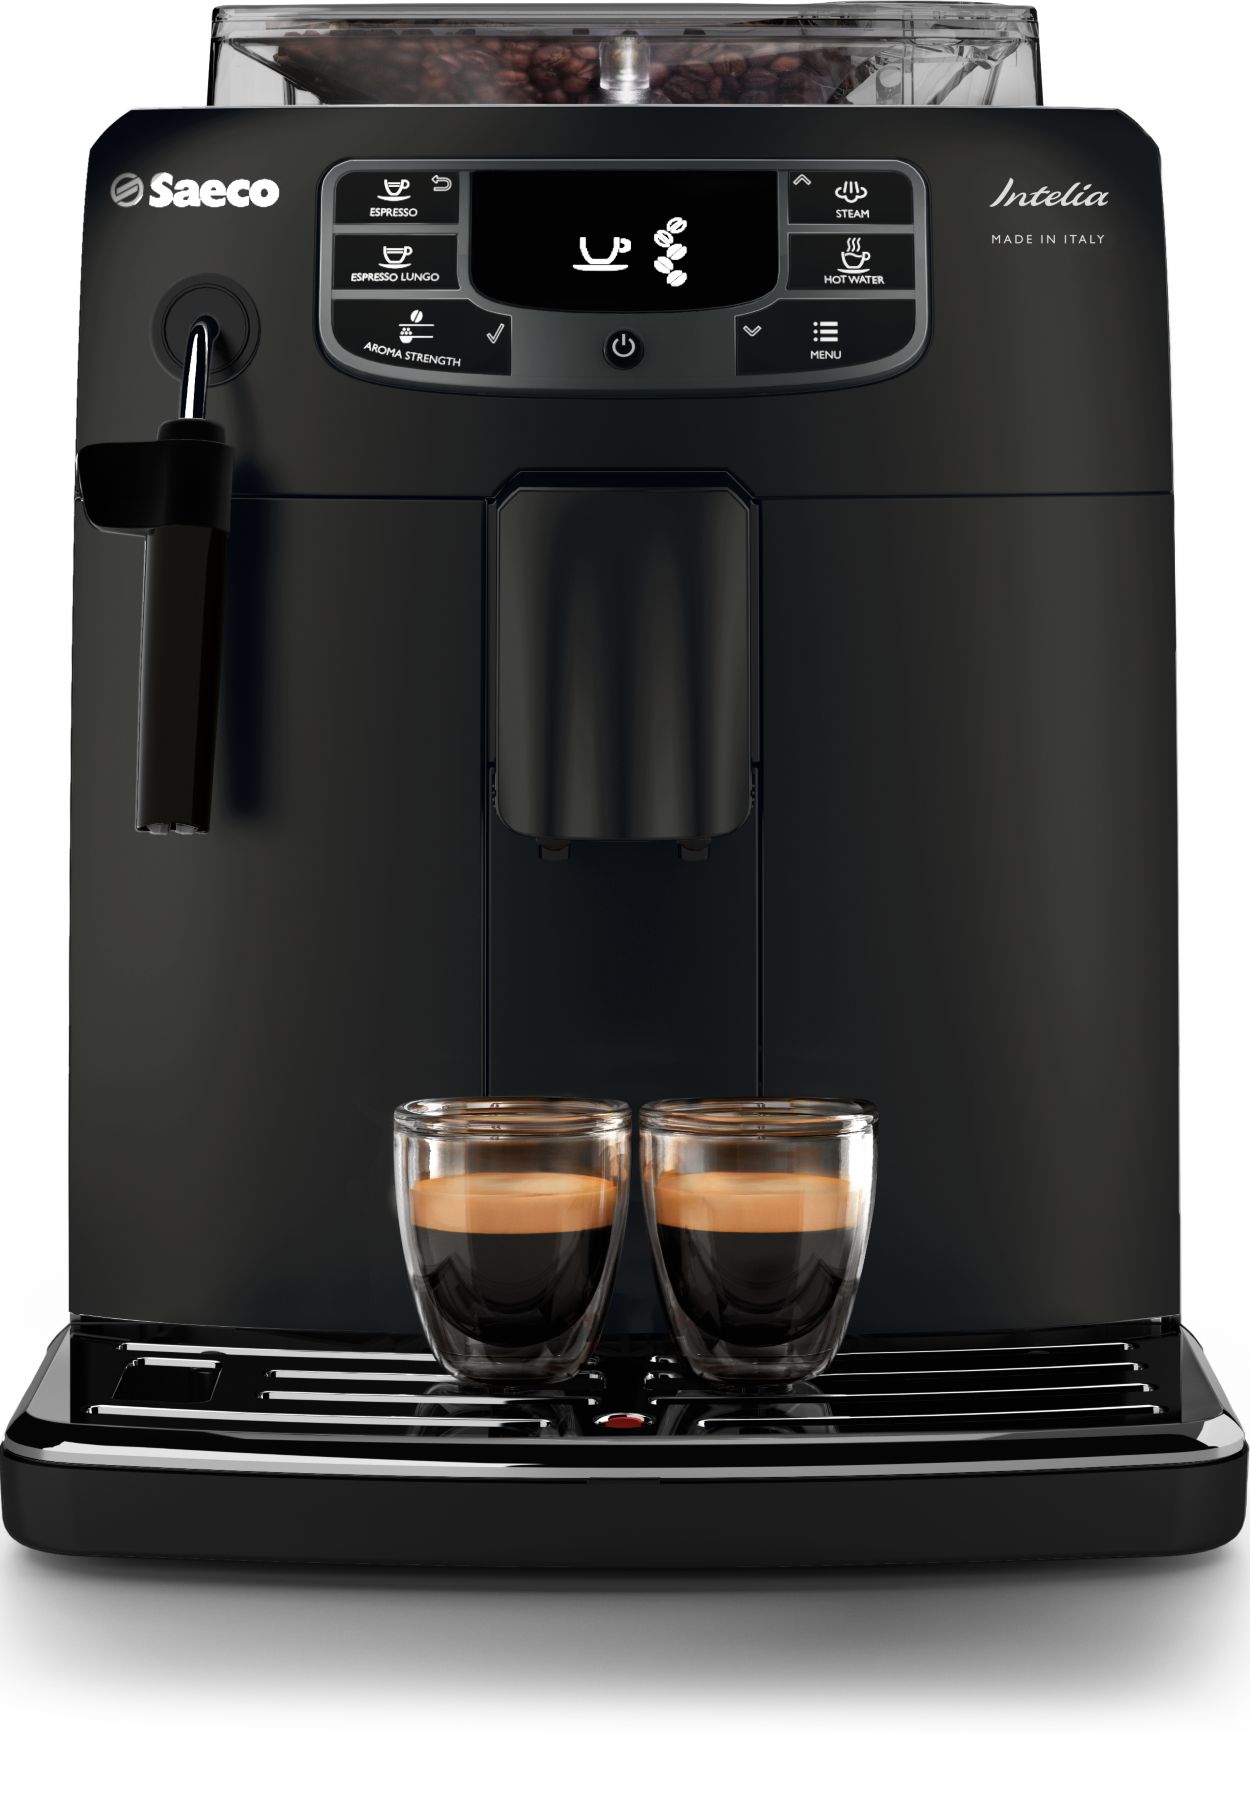 Intelia Deluxe Super-automatic espresso machine HD8758/57